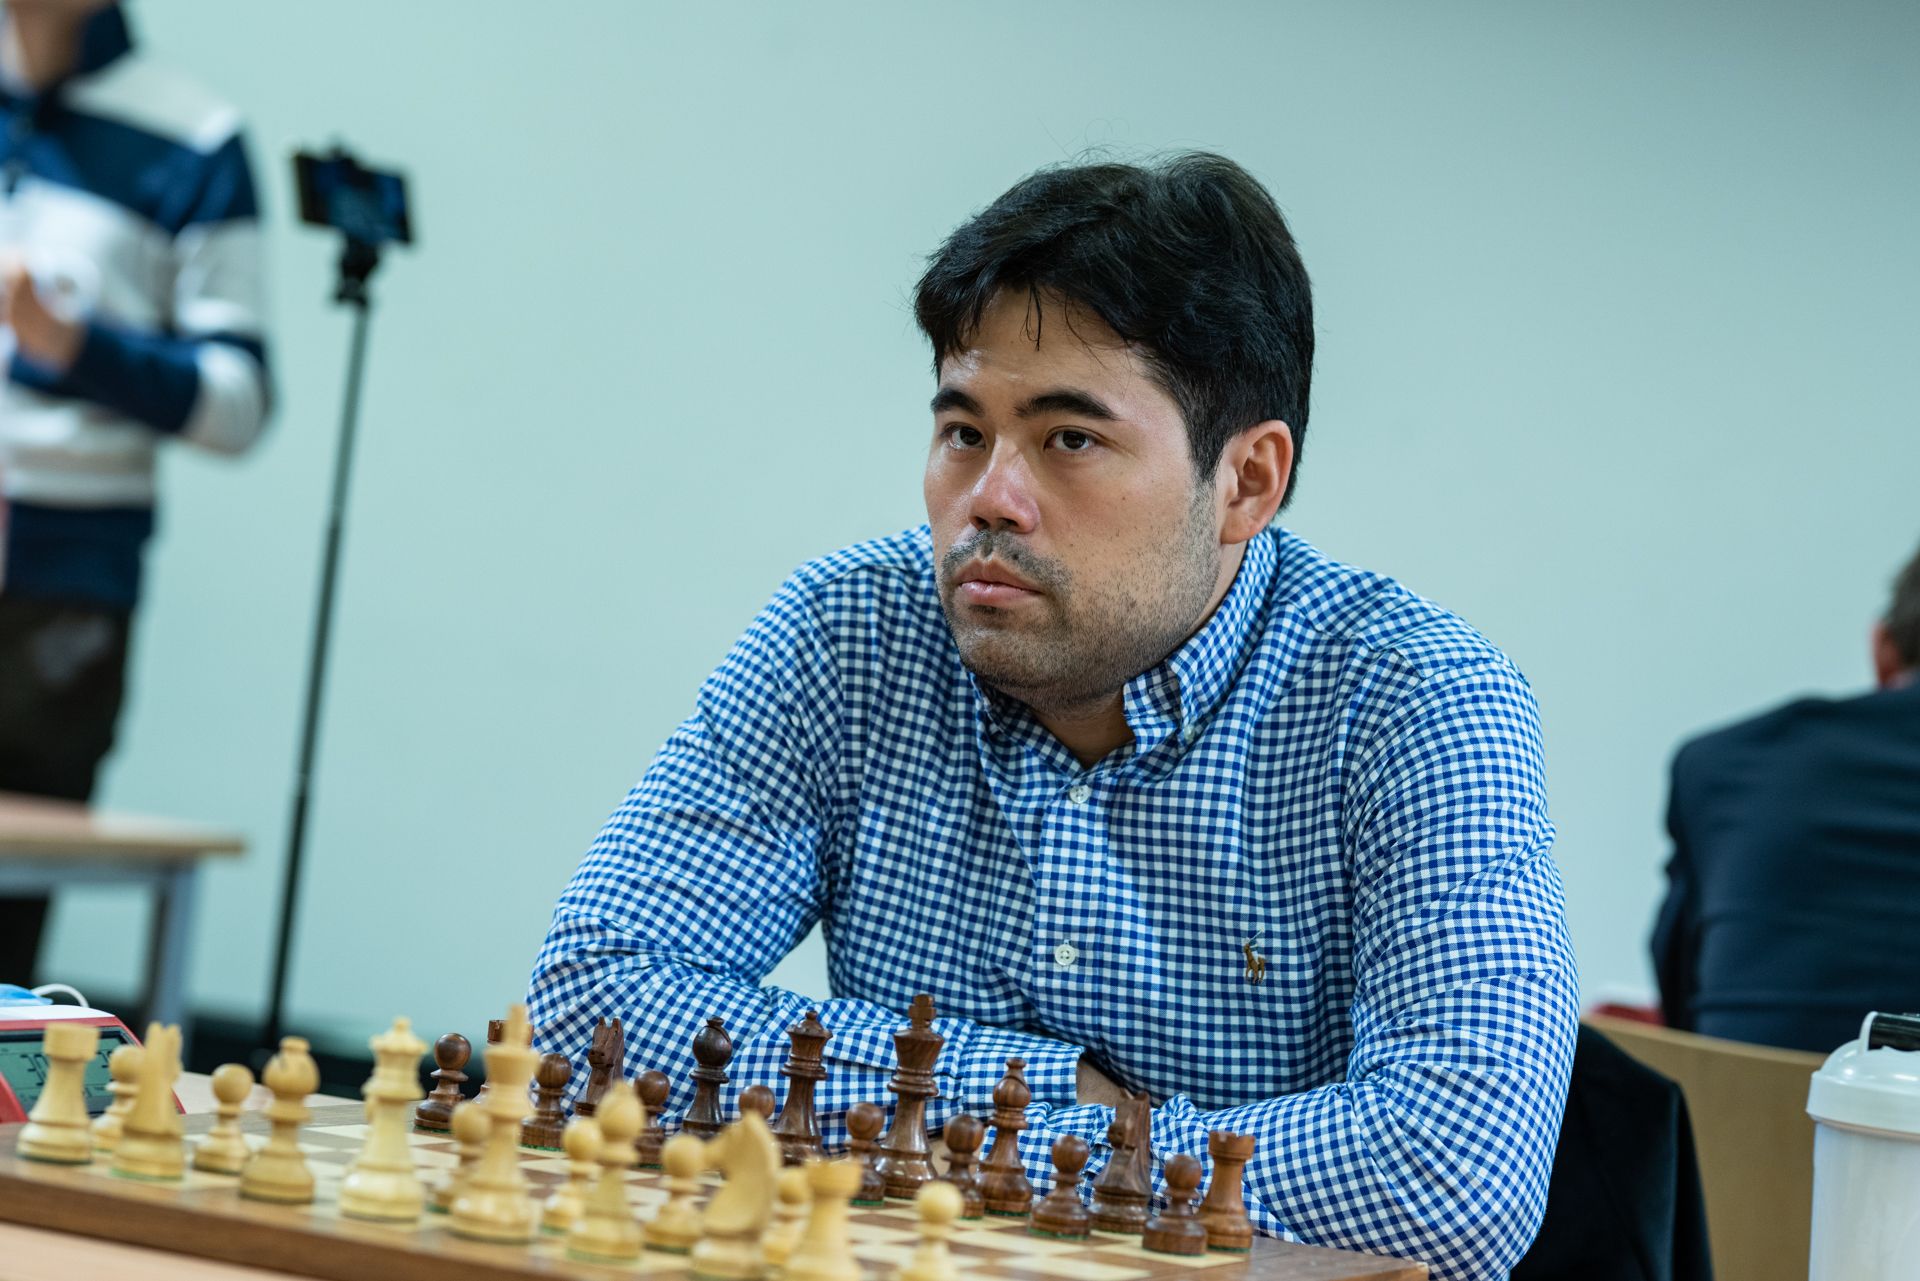 Carlsen venceu o Campeonato Mundial de Blitz e Assaubayeva